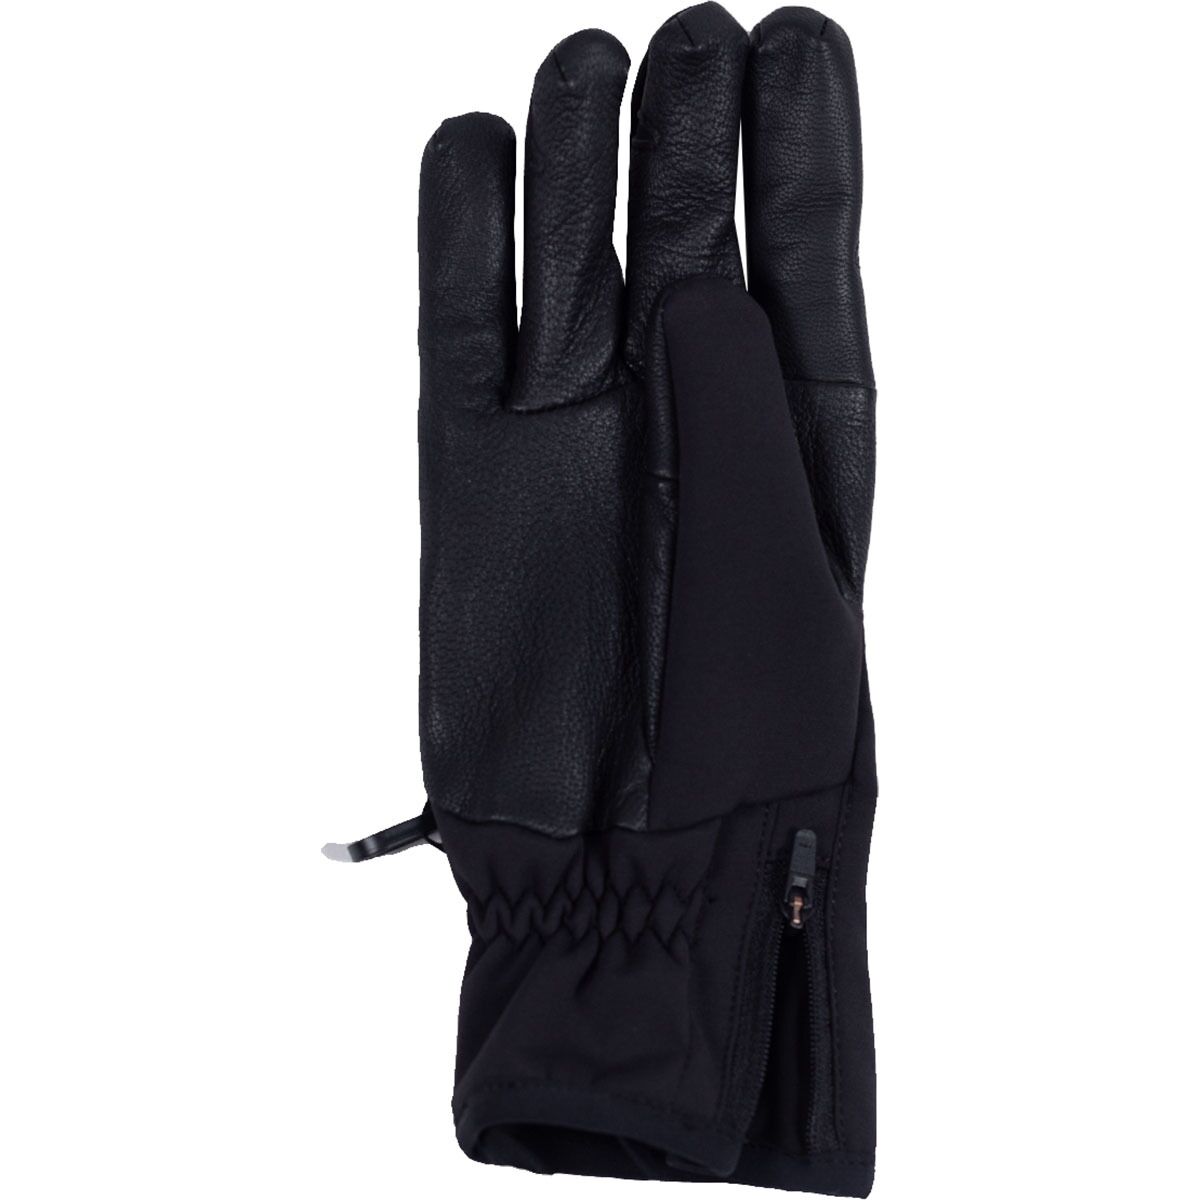 Outdoor Research StormTracker Sensor Glove - Men's Black